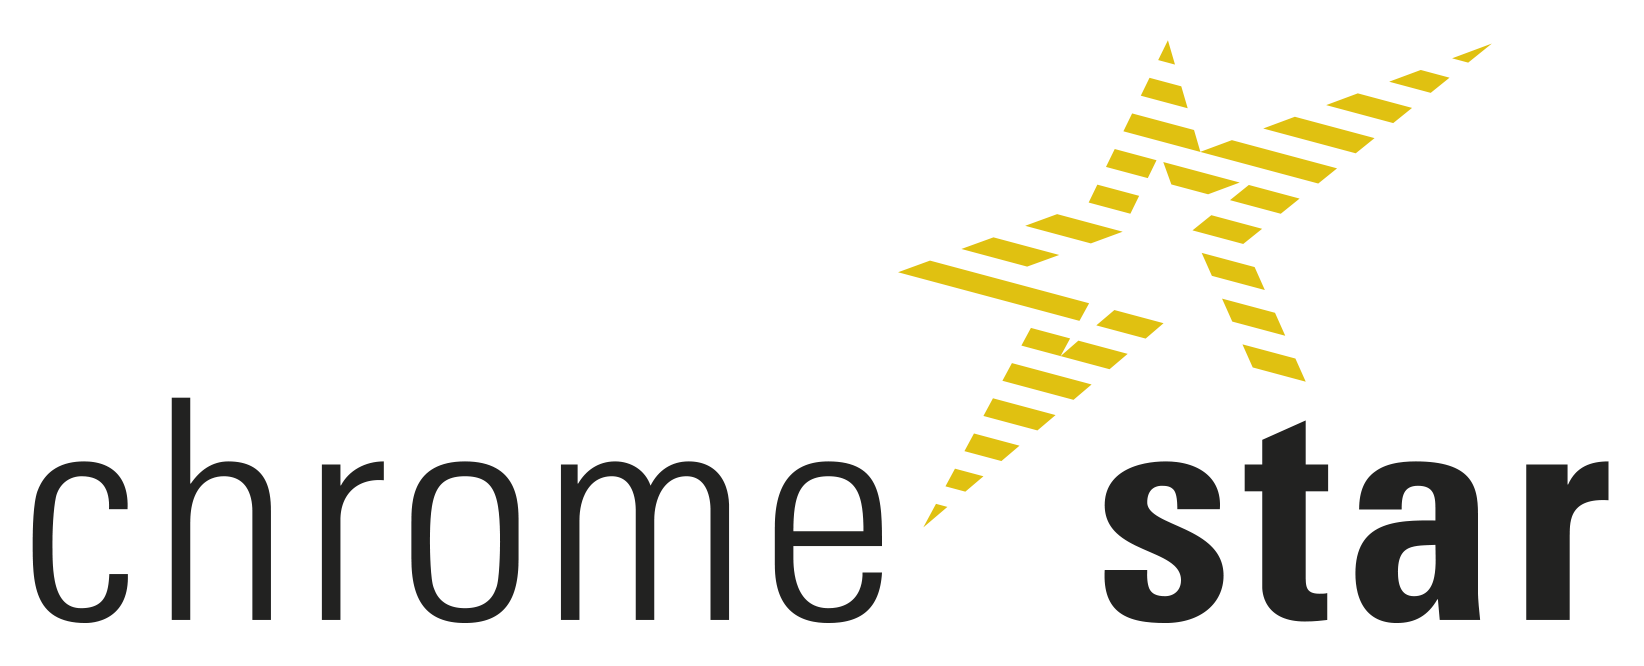 chromestar_logo